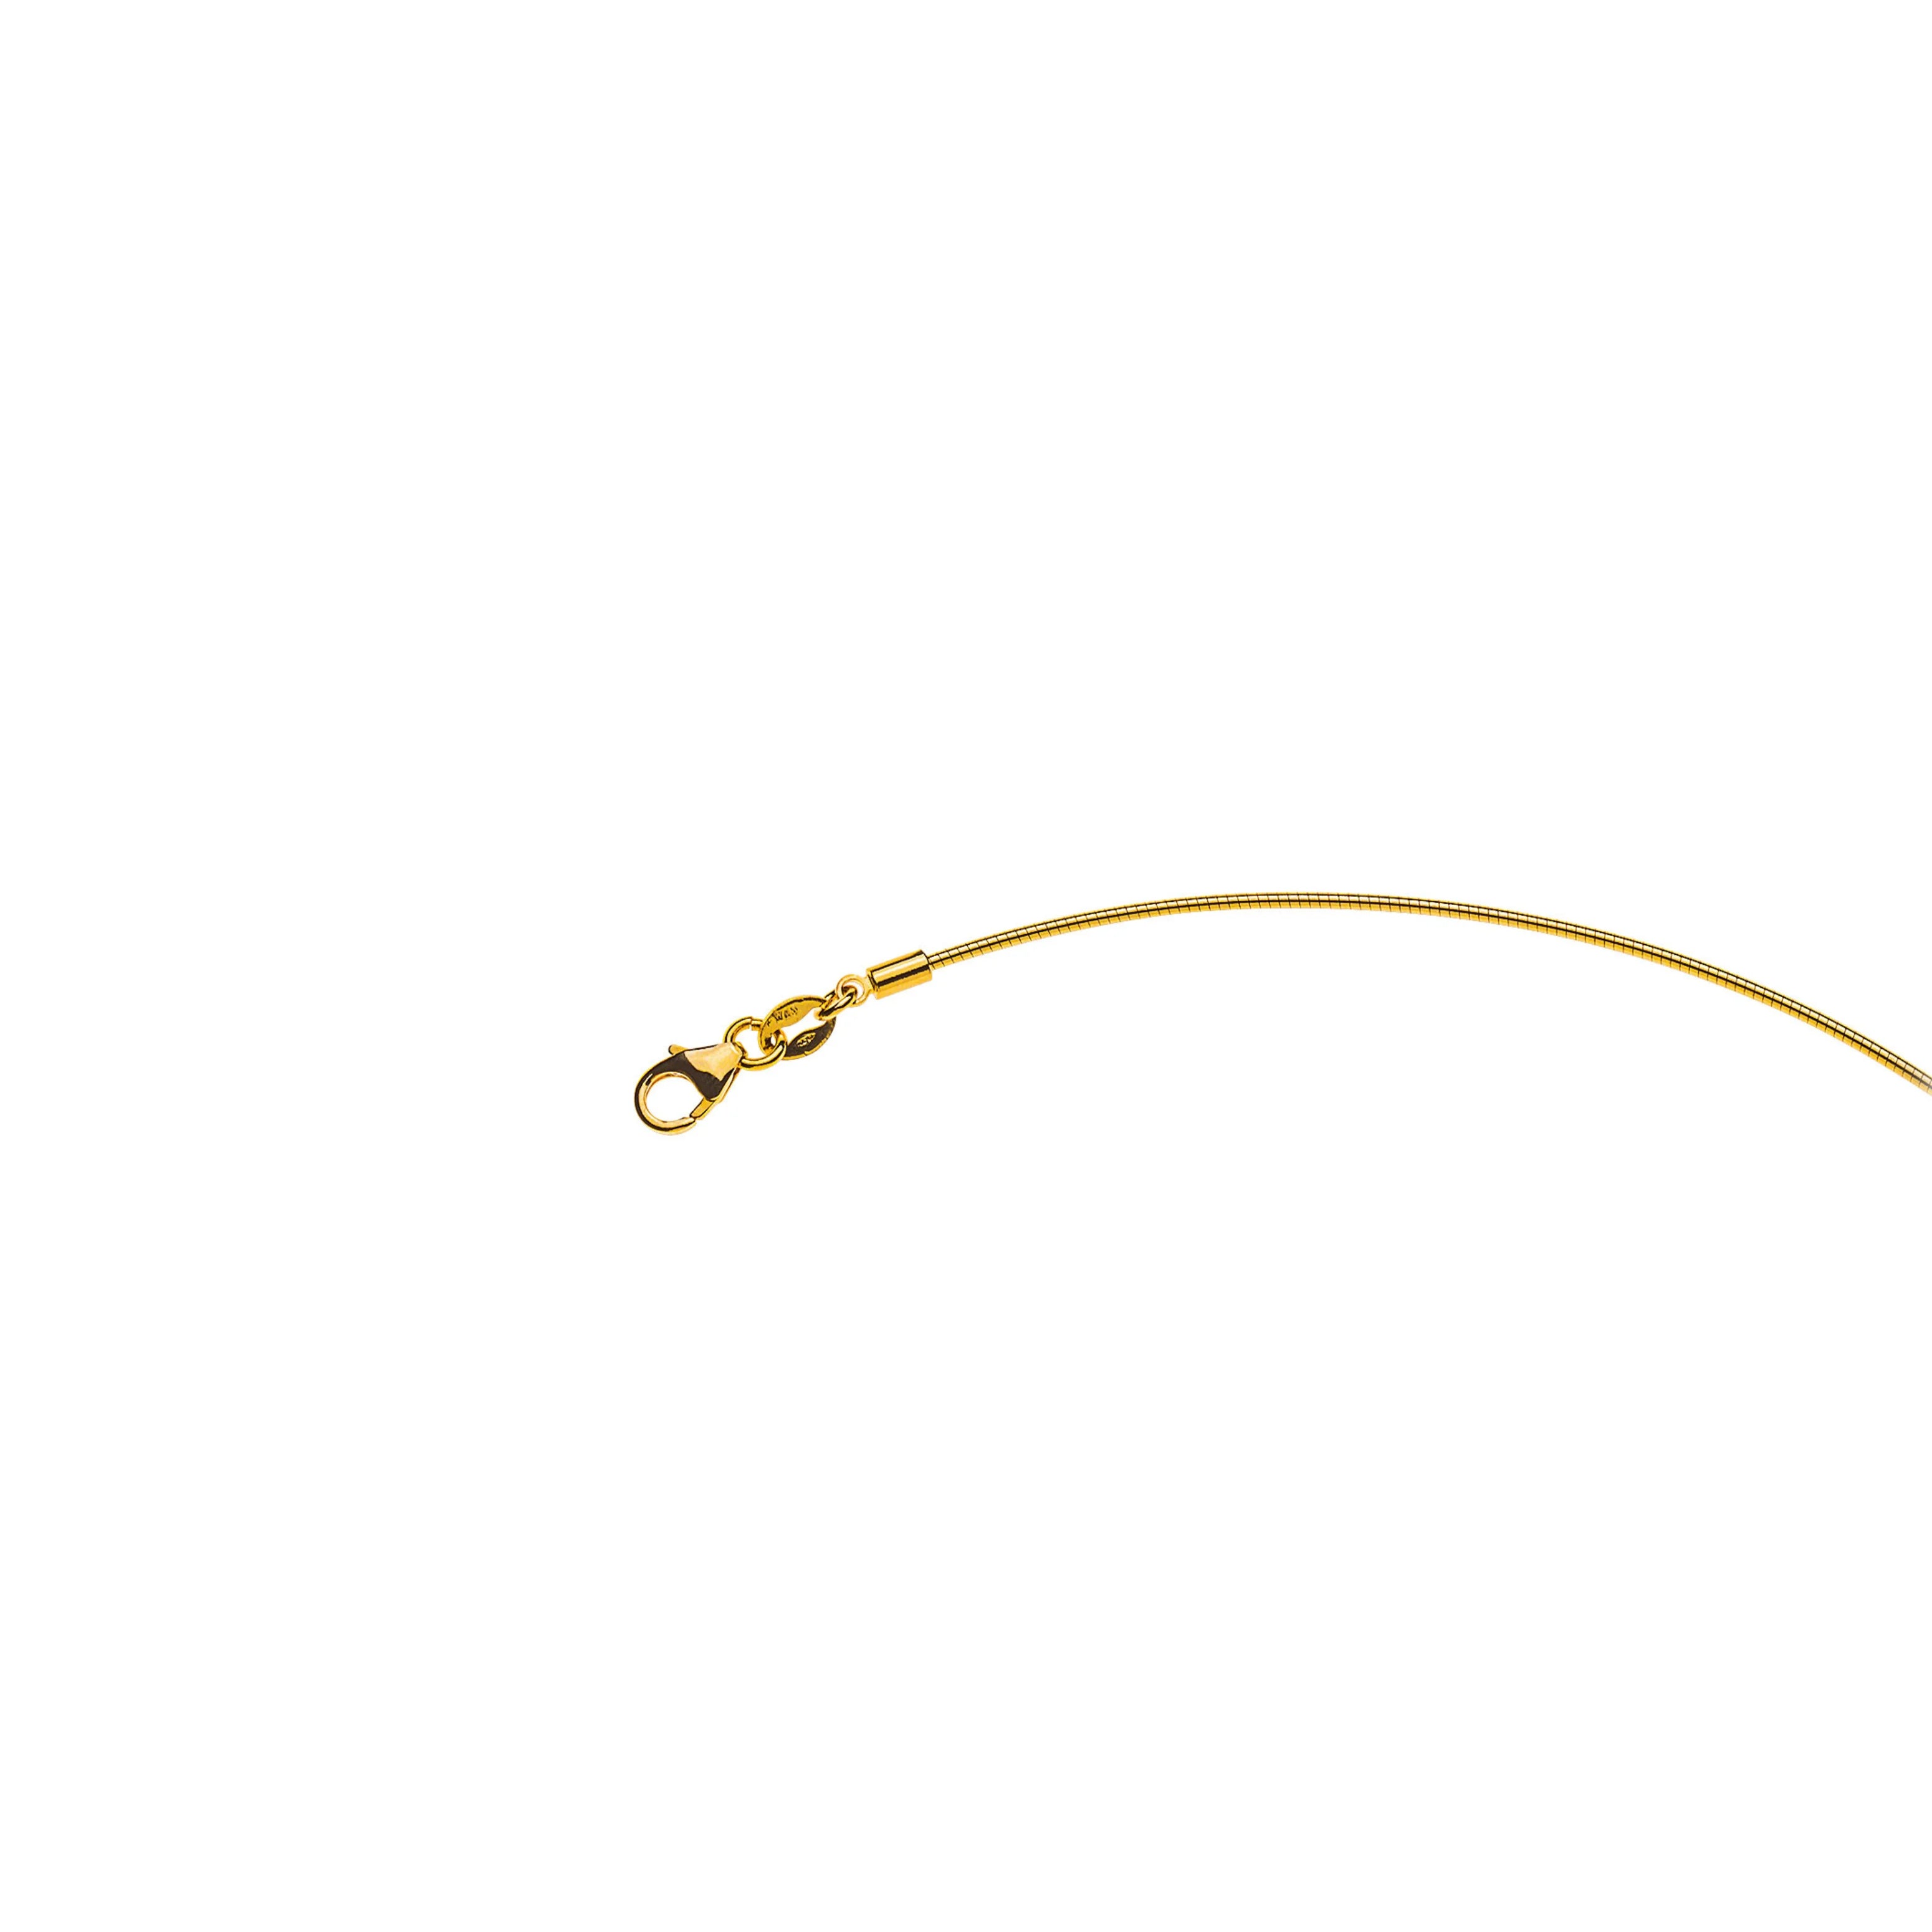 Gelbgold 750 Omega Collier: 1.0mm Breite